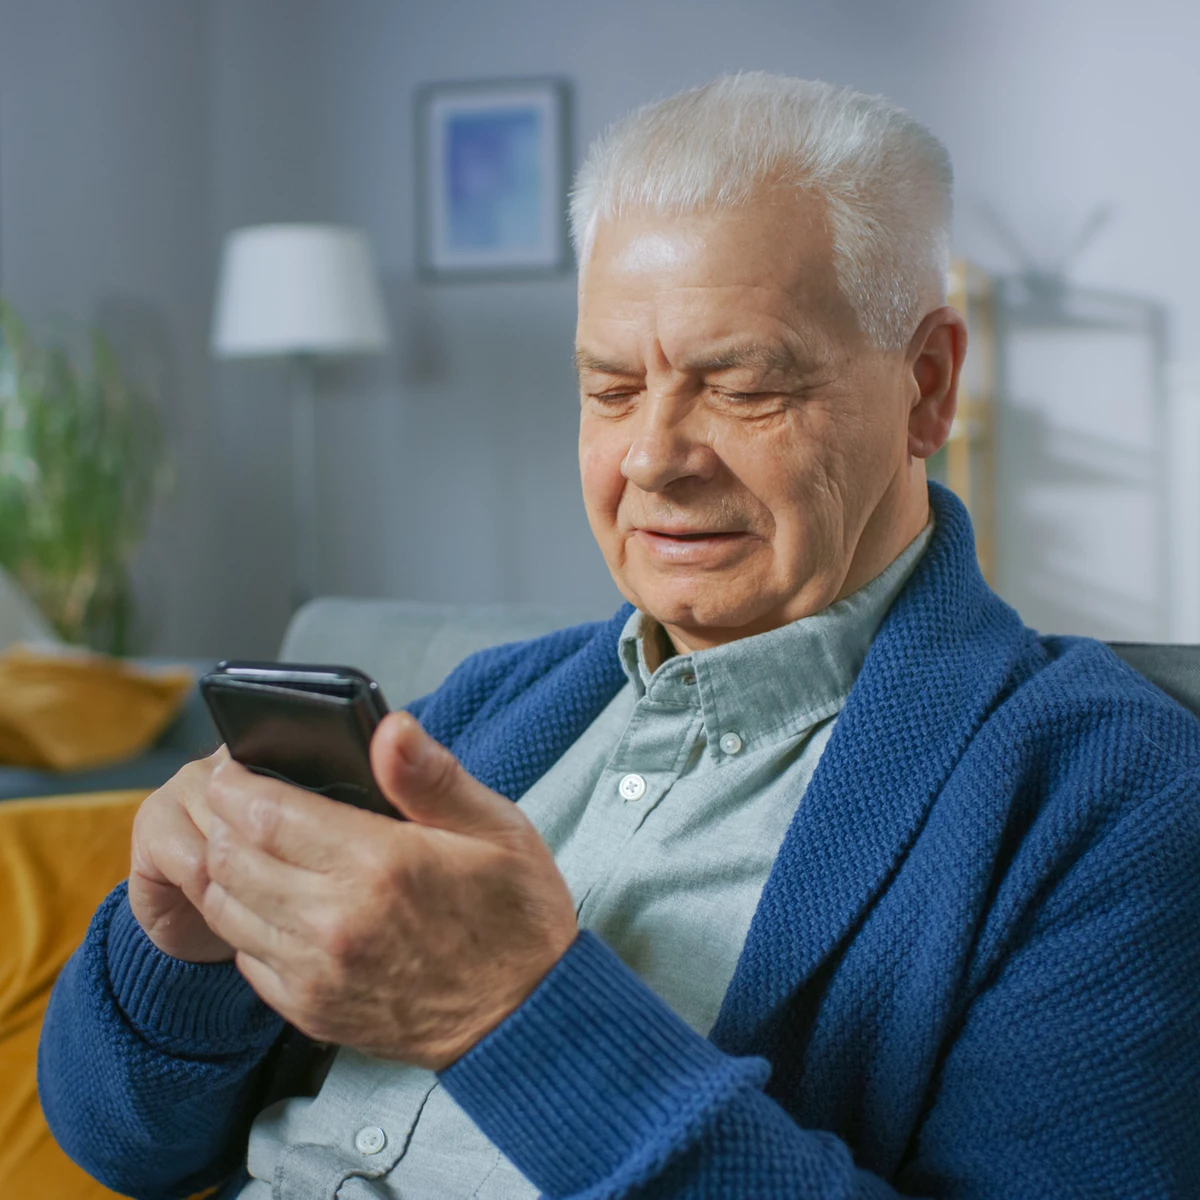 14 Aplicaciones móviles para personas mayores - Asociación Española  Conectados Sin Barreras Social y Tecnológica (AECSBST)